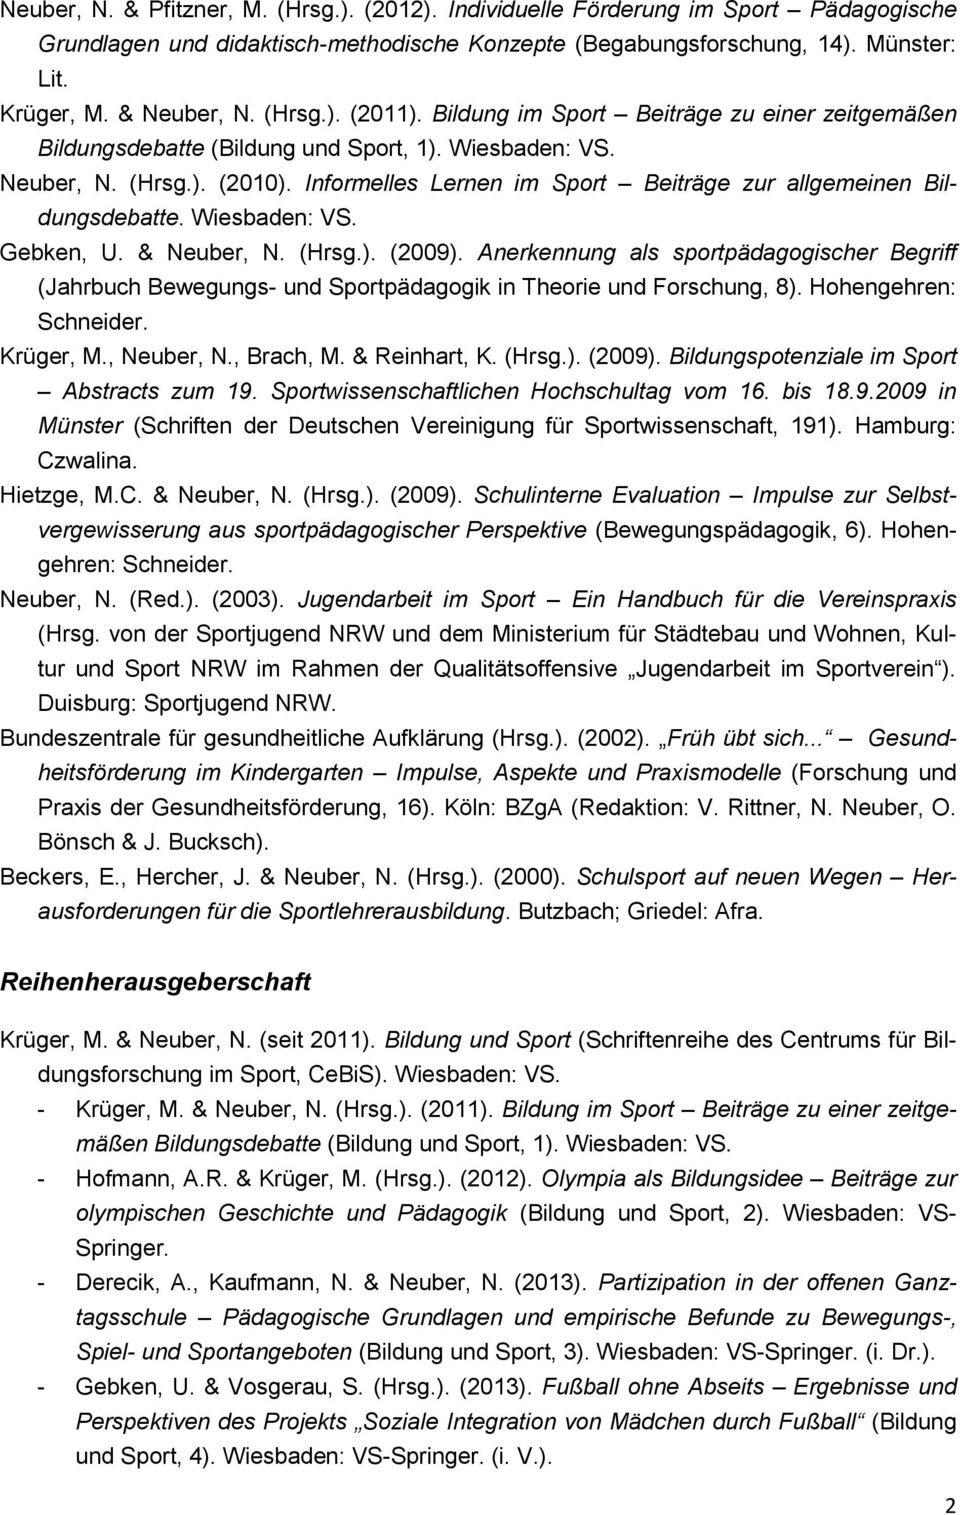 Informelles Lernen im Sport Beiträge zur allgemeinen Bildungsdebatte. Wiesbaden: VS. Gebken, U. & Neuber, N. (Hrsg.). (2009).